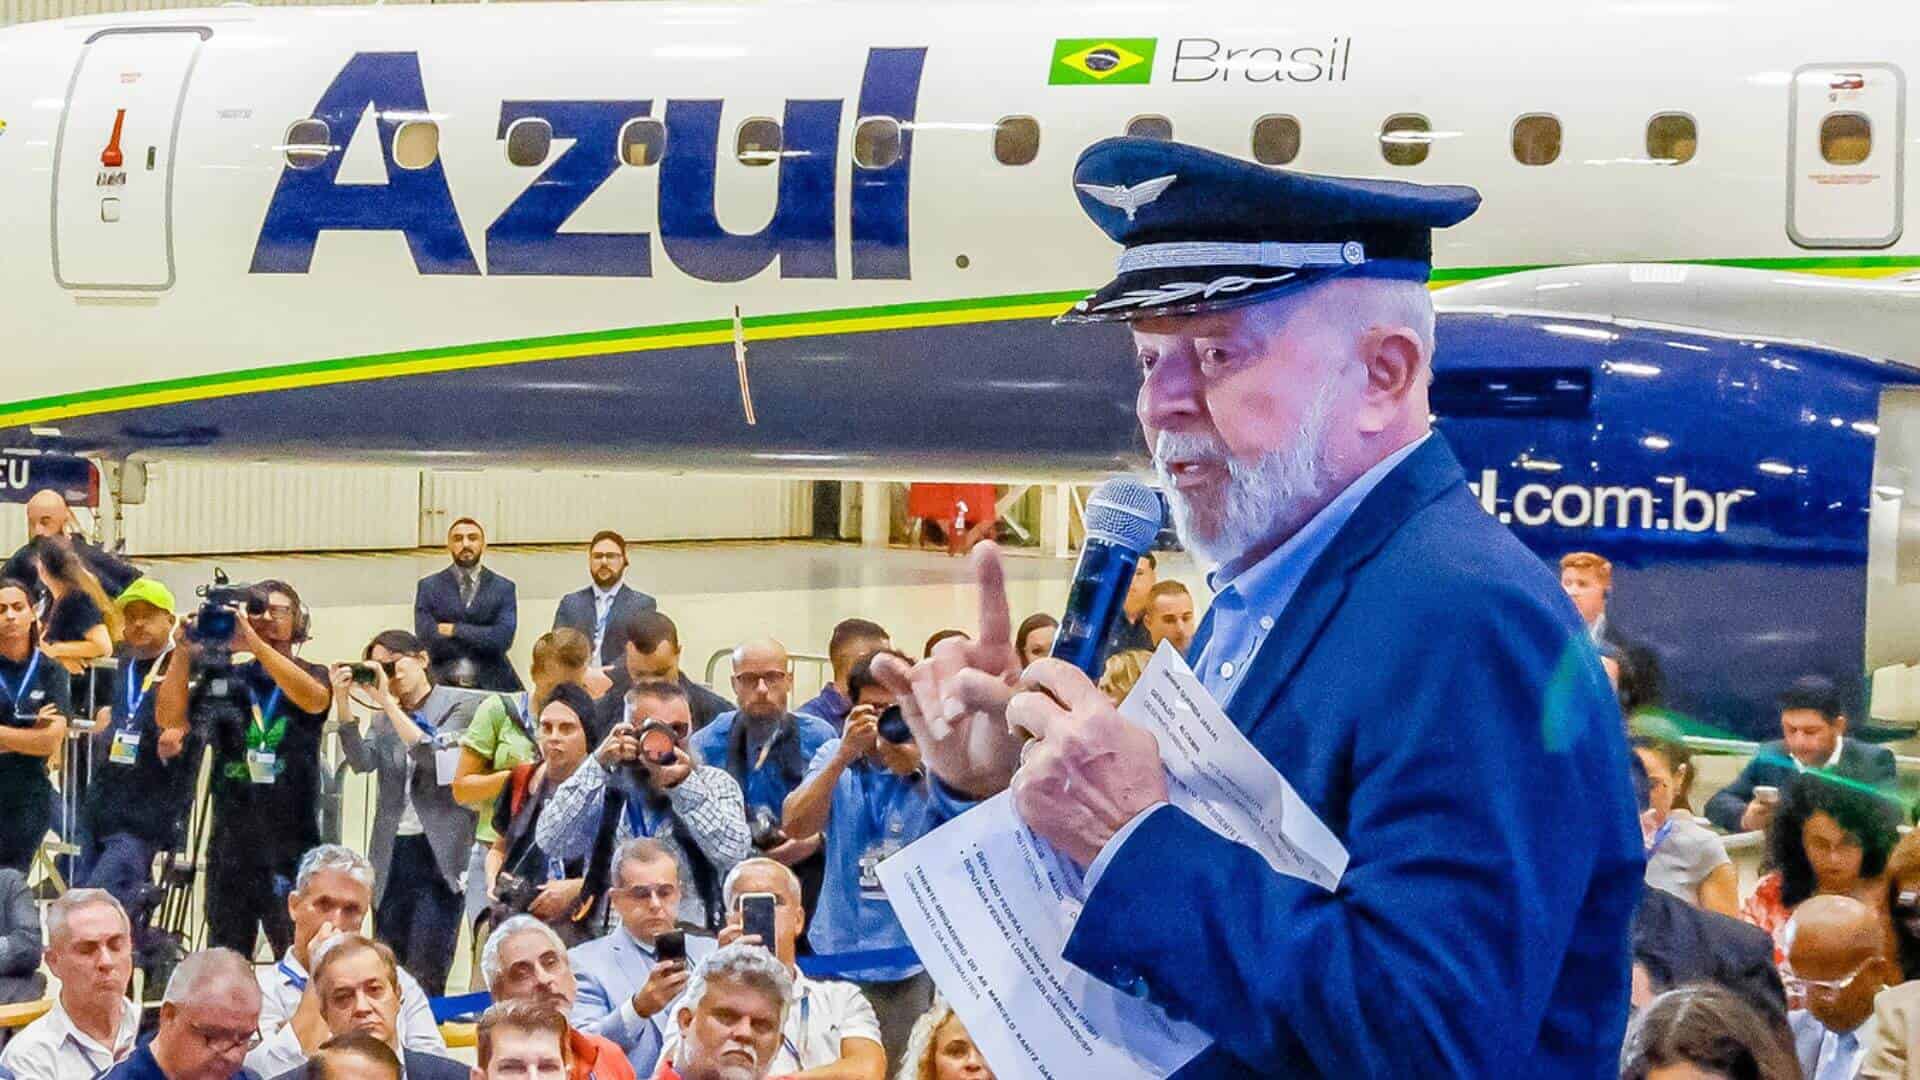 Presidente da República, Luiz Inácio Lula da Silva, durante Cerimônia de entrega de aeronave da Embraer à Azul. Foto: Ricardo Stuckert / PR